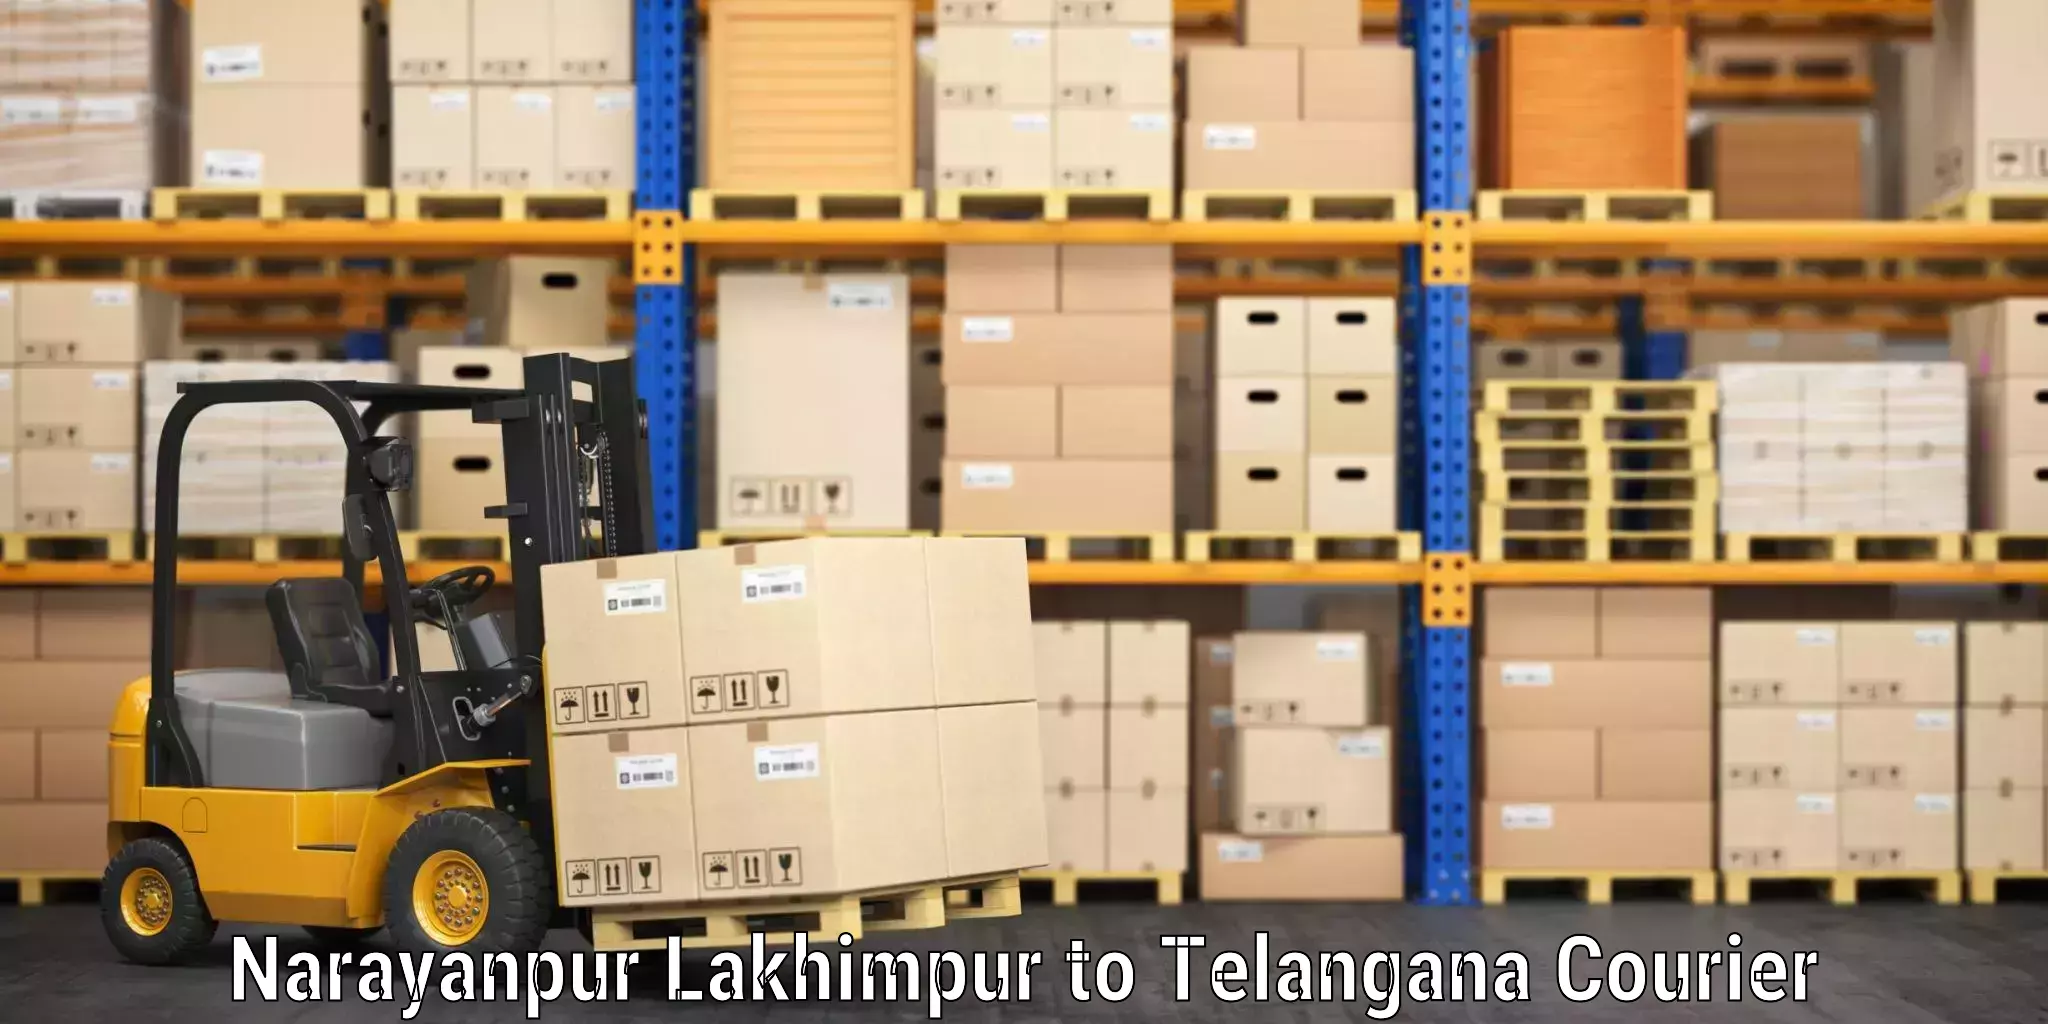 Luggage shipping guide Narayanpur Lakhimpur to Haliya